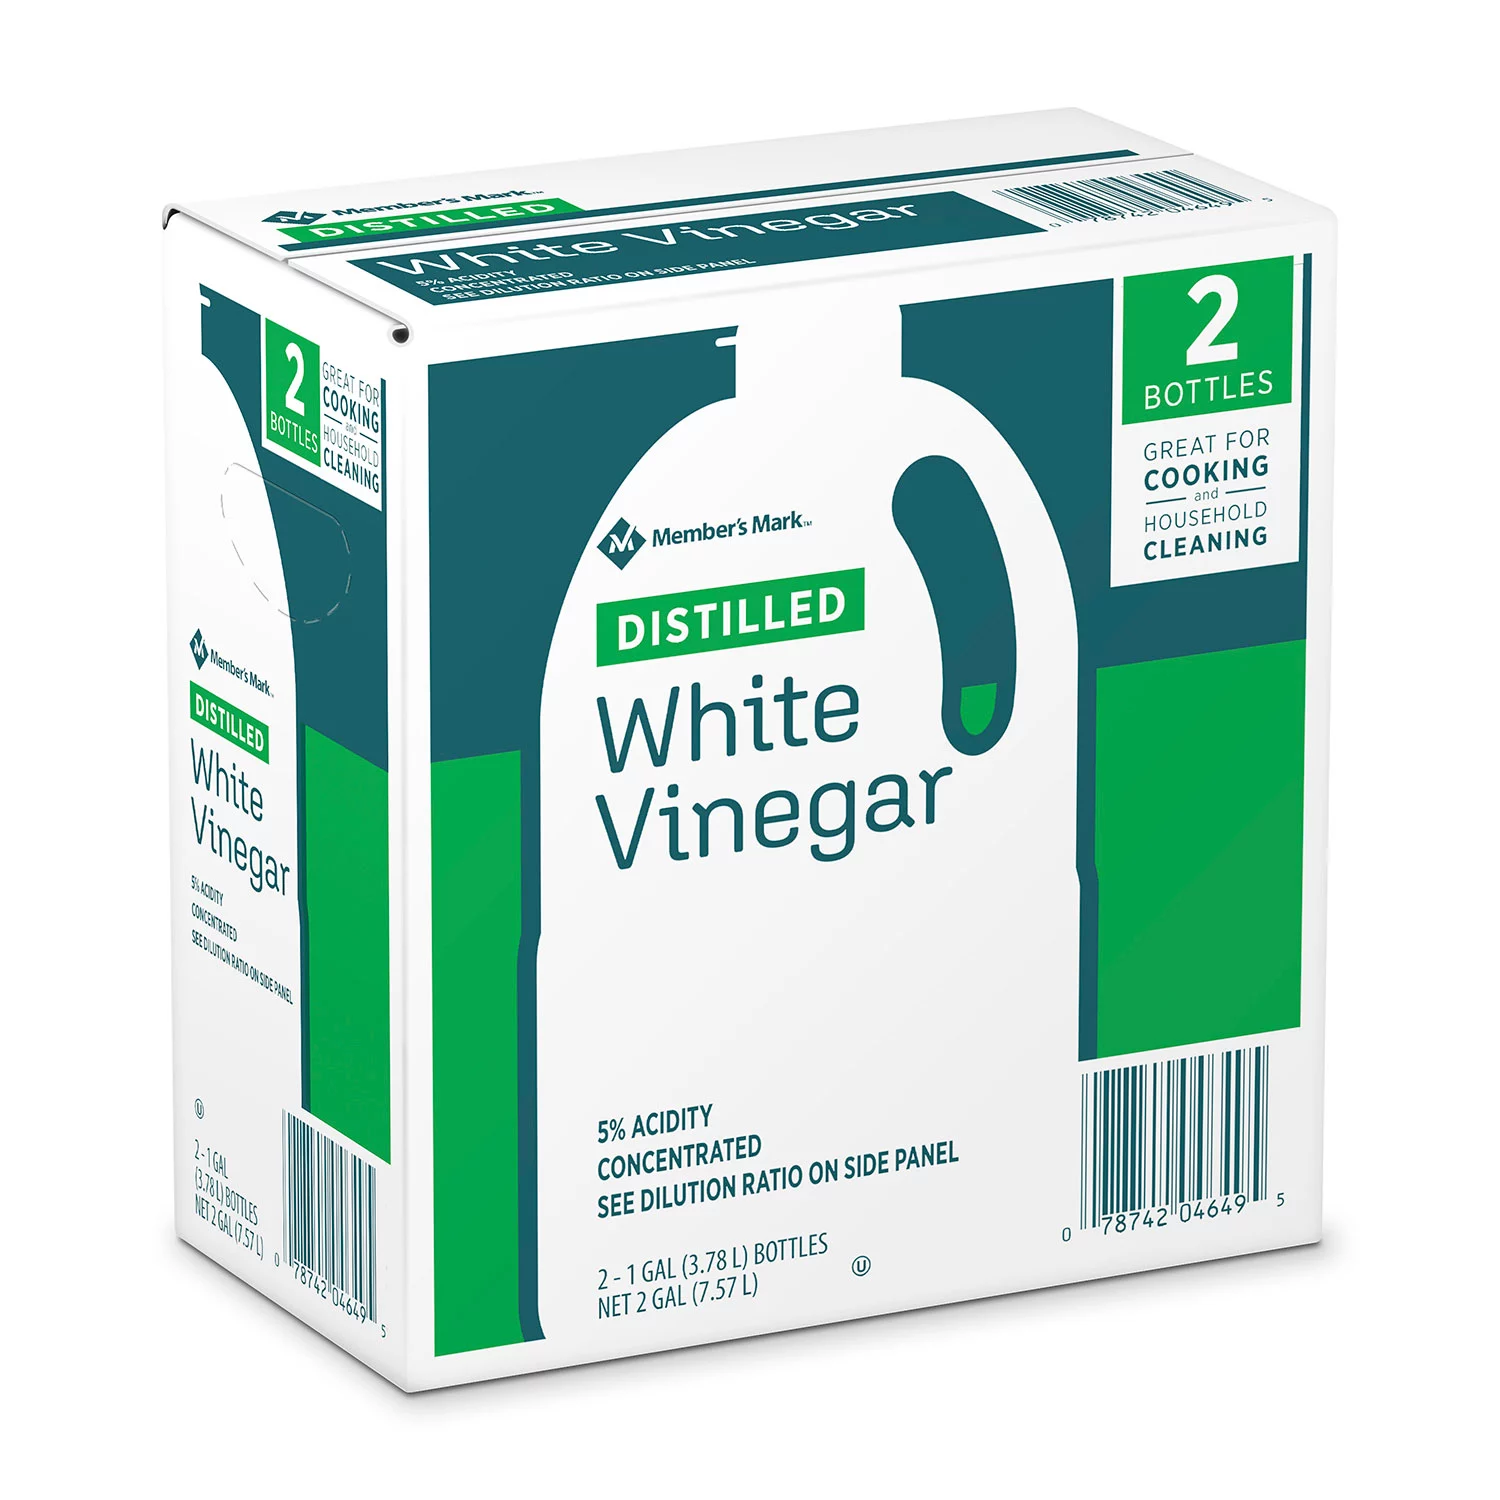 Member's Mark Distilled White Vinegar